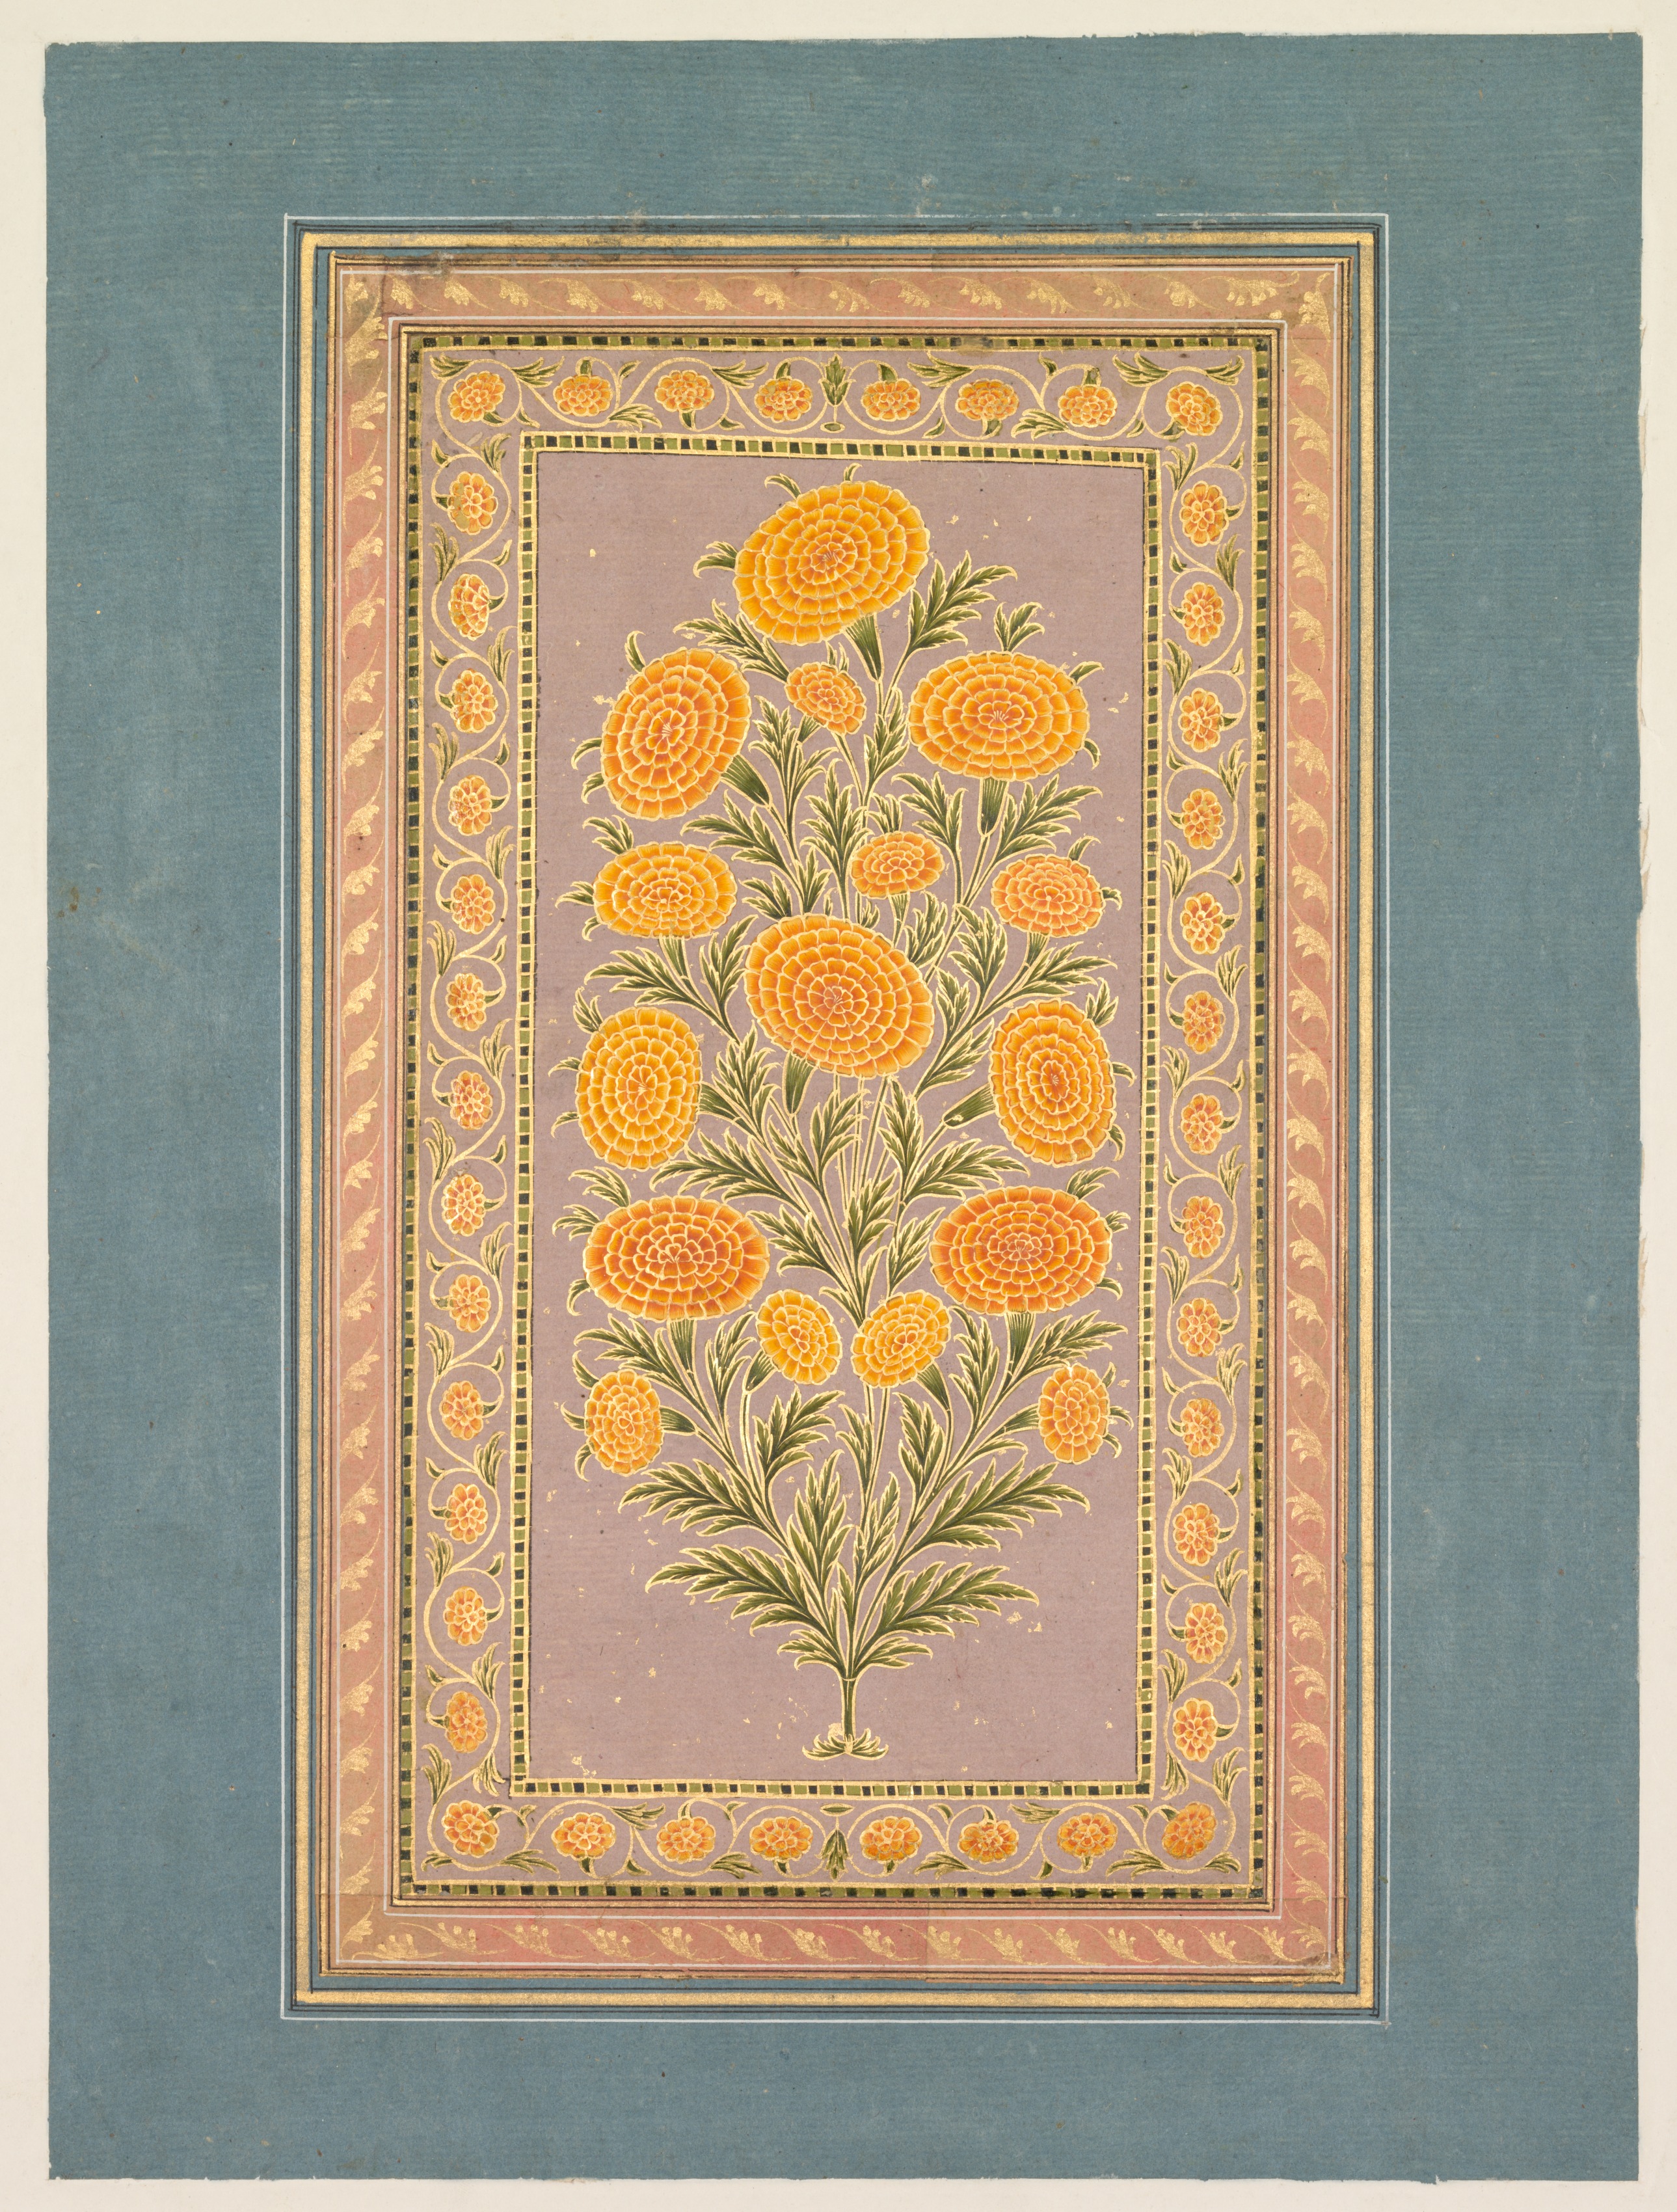 Цветущие бархатцы by Неизвестный Художни - ок. 1765 - 33.1 x 24.9 см 